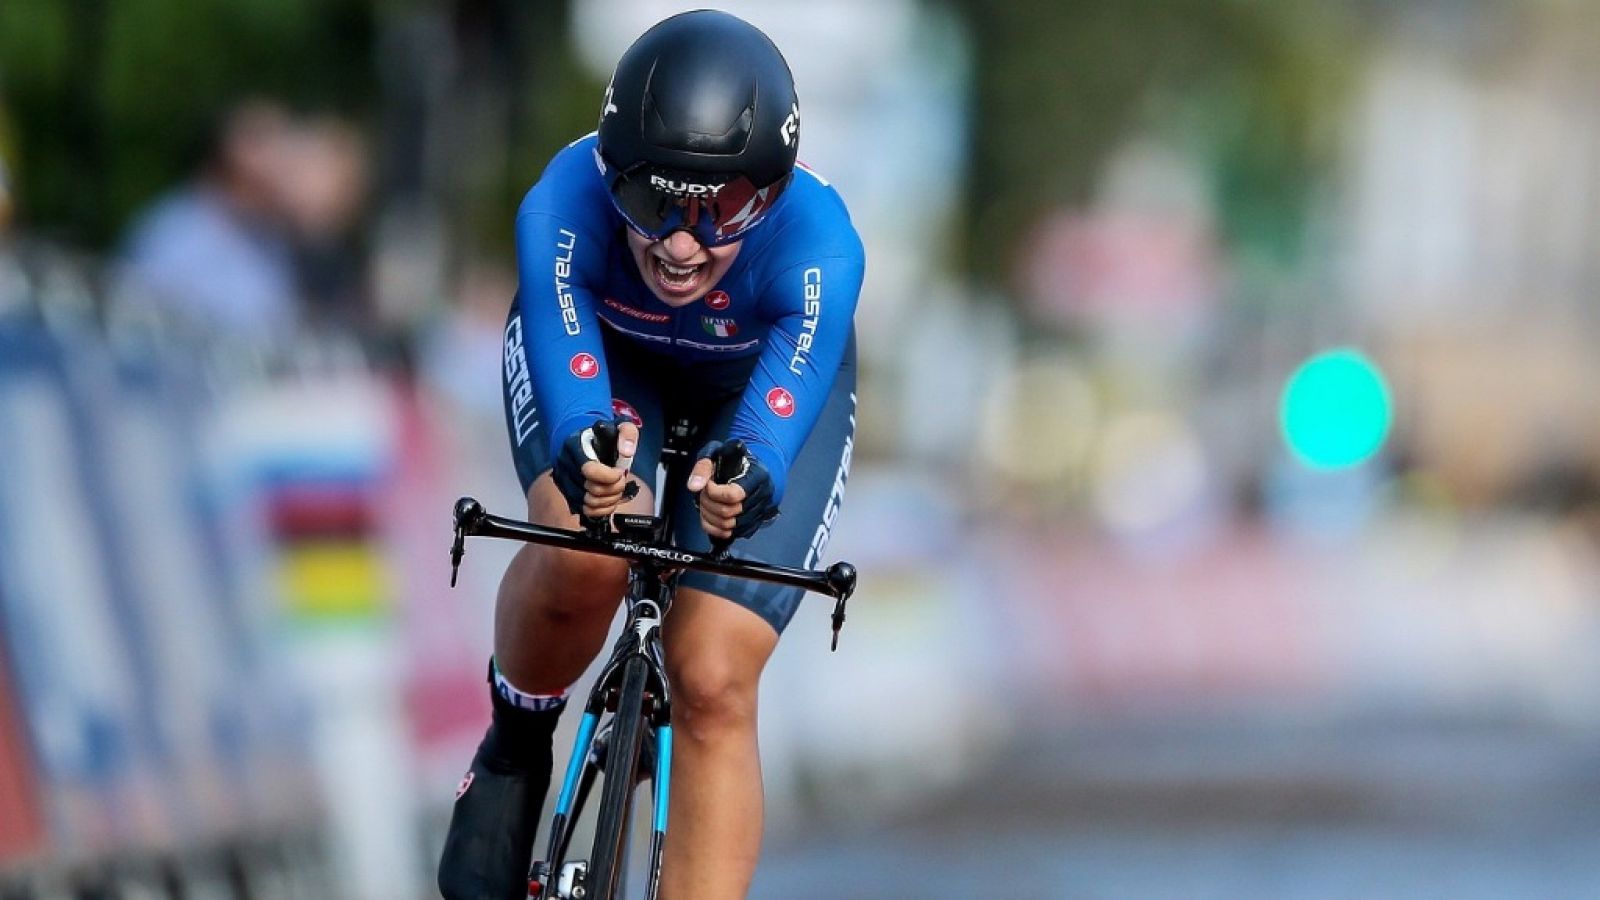 Ciclismo - Campeonato del mundo en ruta contrarreloj élite femenina